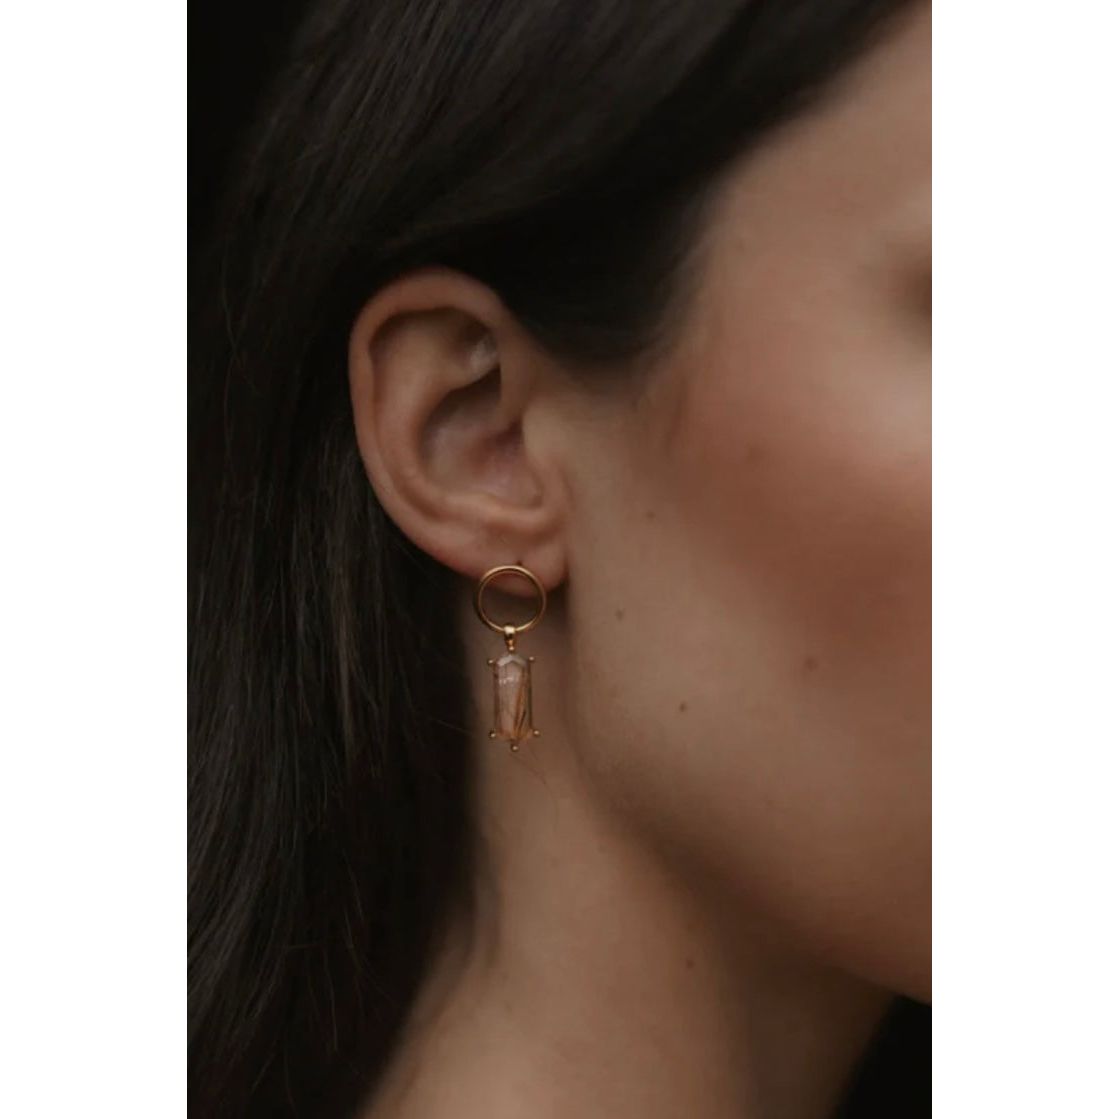 Lang earrings